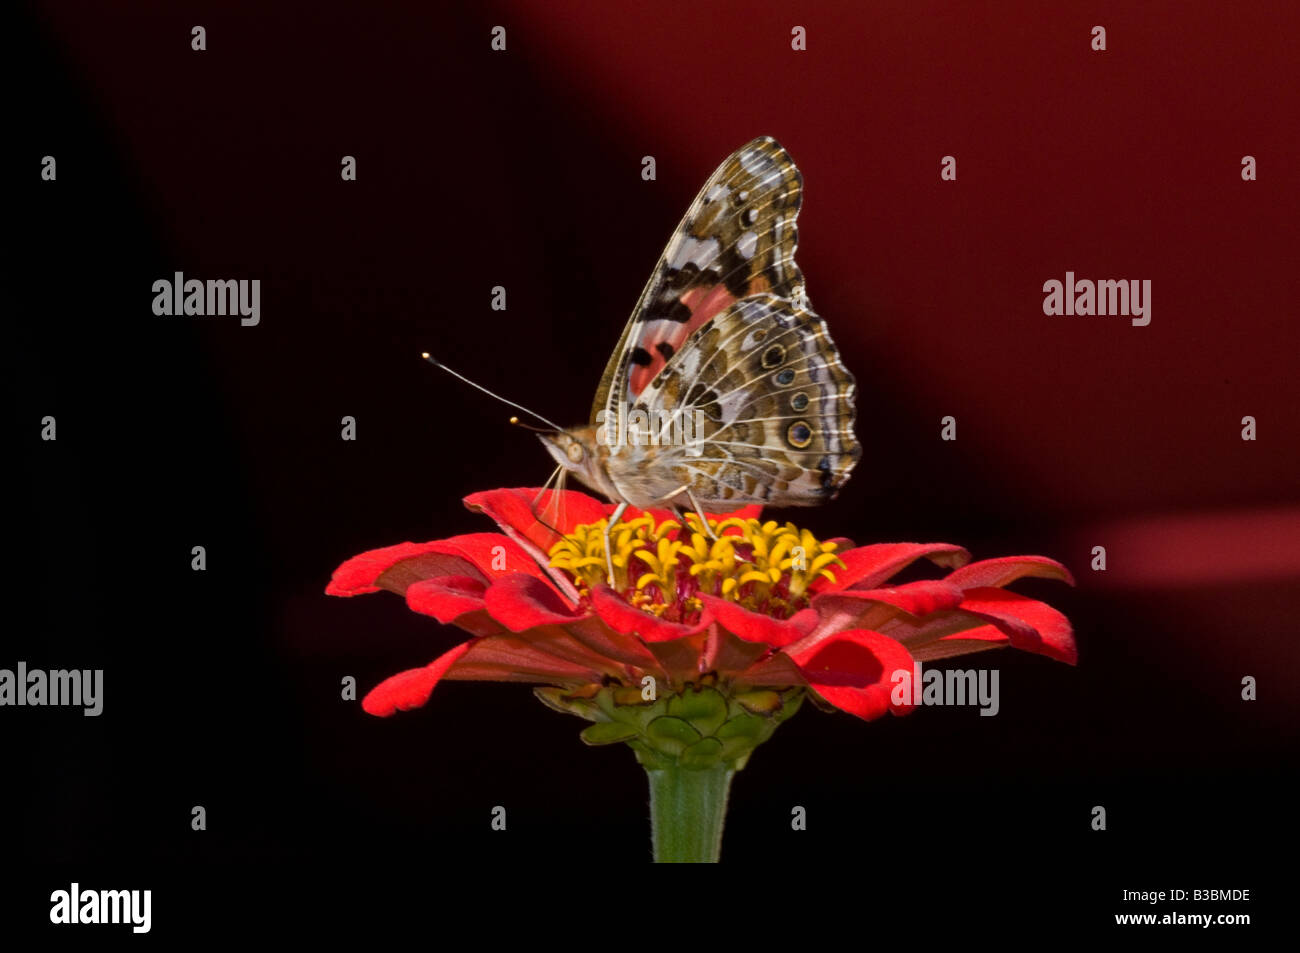 Distelfalter Schmetterling auf Zinnia Blume Nectaring. Stockfoto